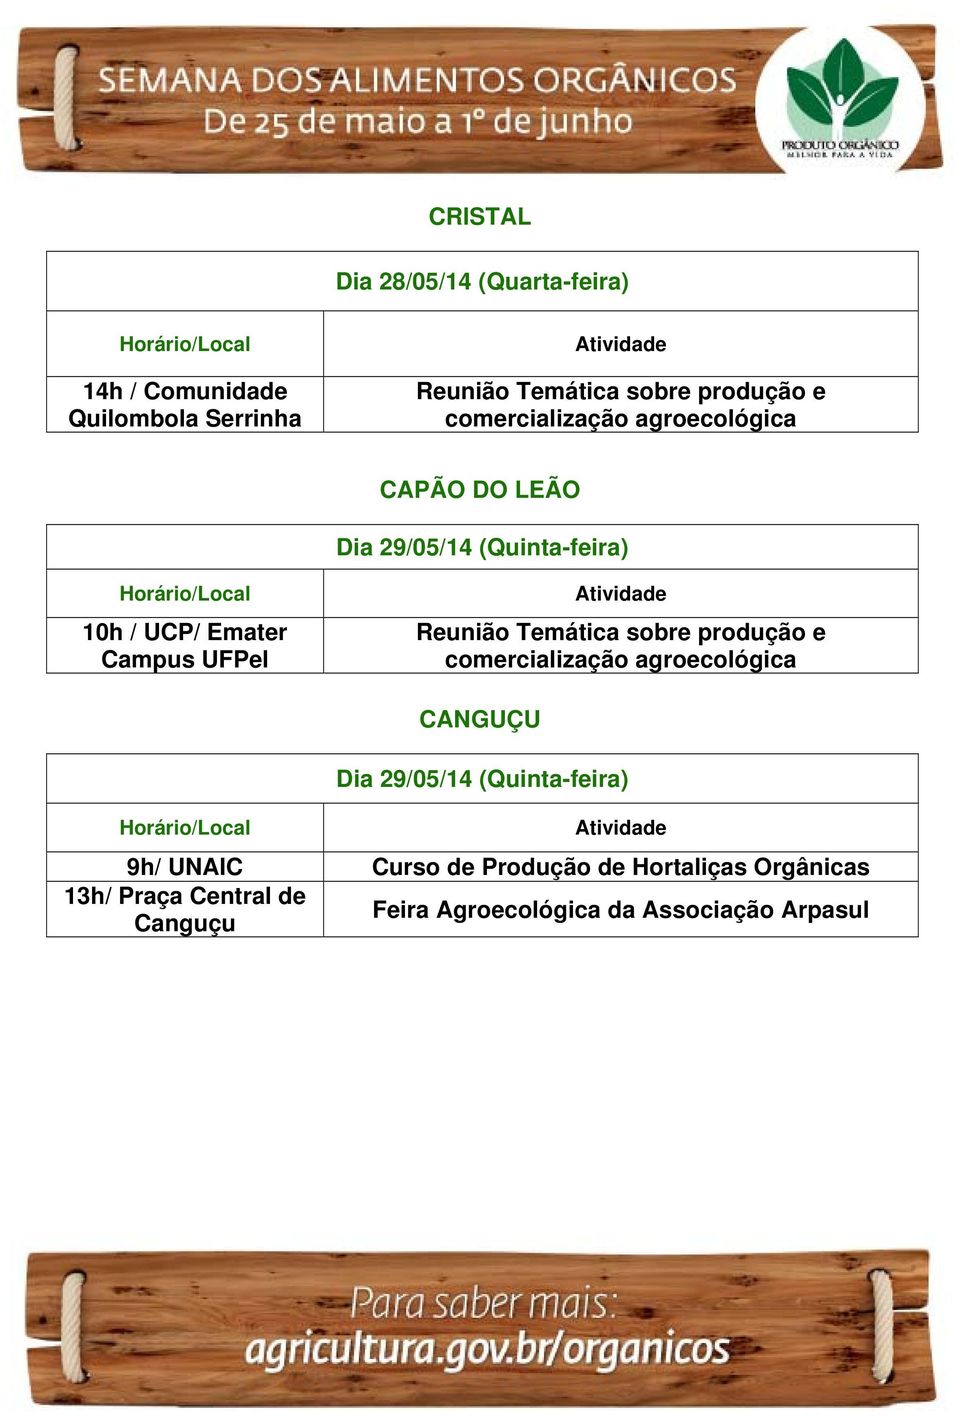 Temática sobre produção e comercialização agroecológica CANGUÇU 9h/ UNAIC Curso de